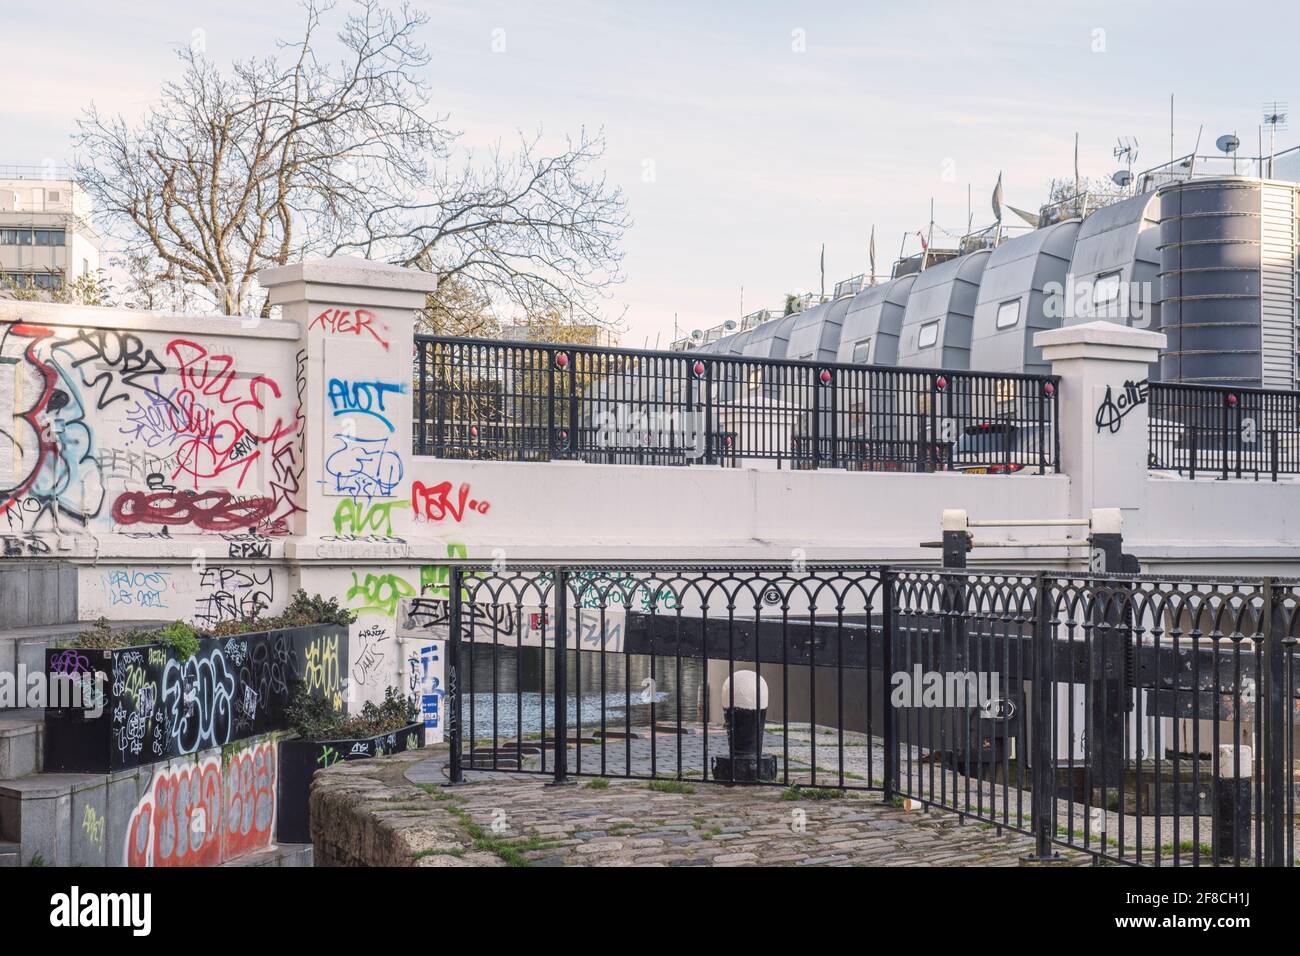 Kentish Town Road Bridge, Kentish Town Lock & Regent's Canal, Grand Union Walk résidences, scène urbaine avec des balises de graffiti, sentier, Camden, Londres Banque D'Images